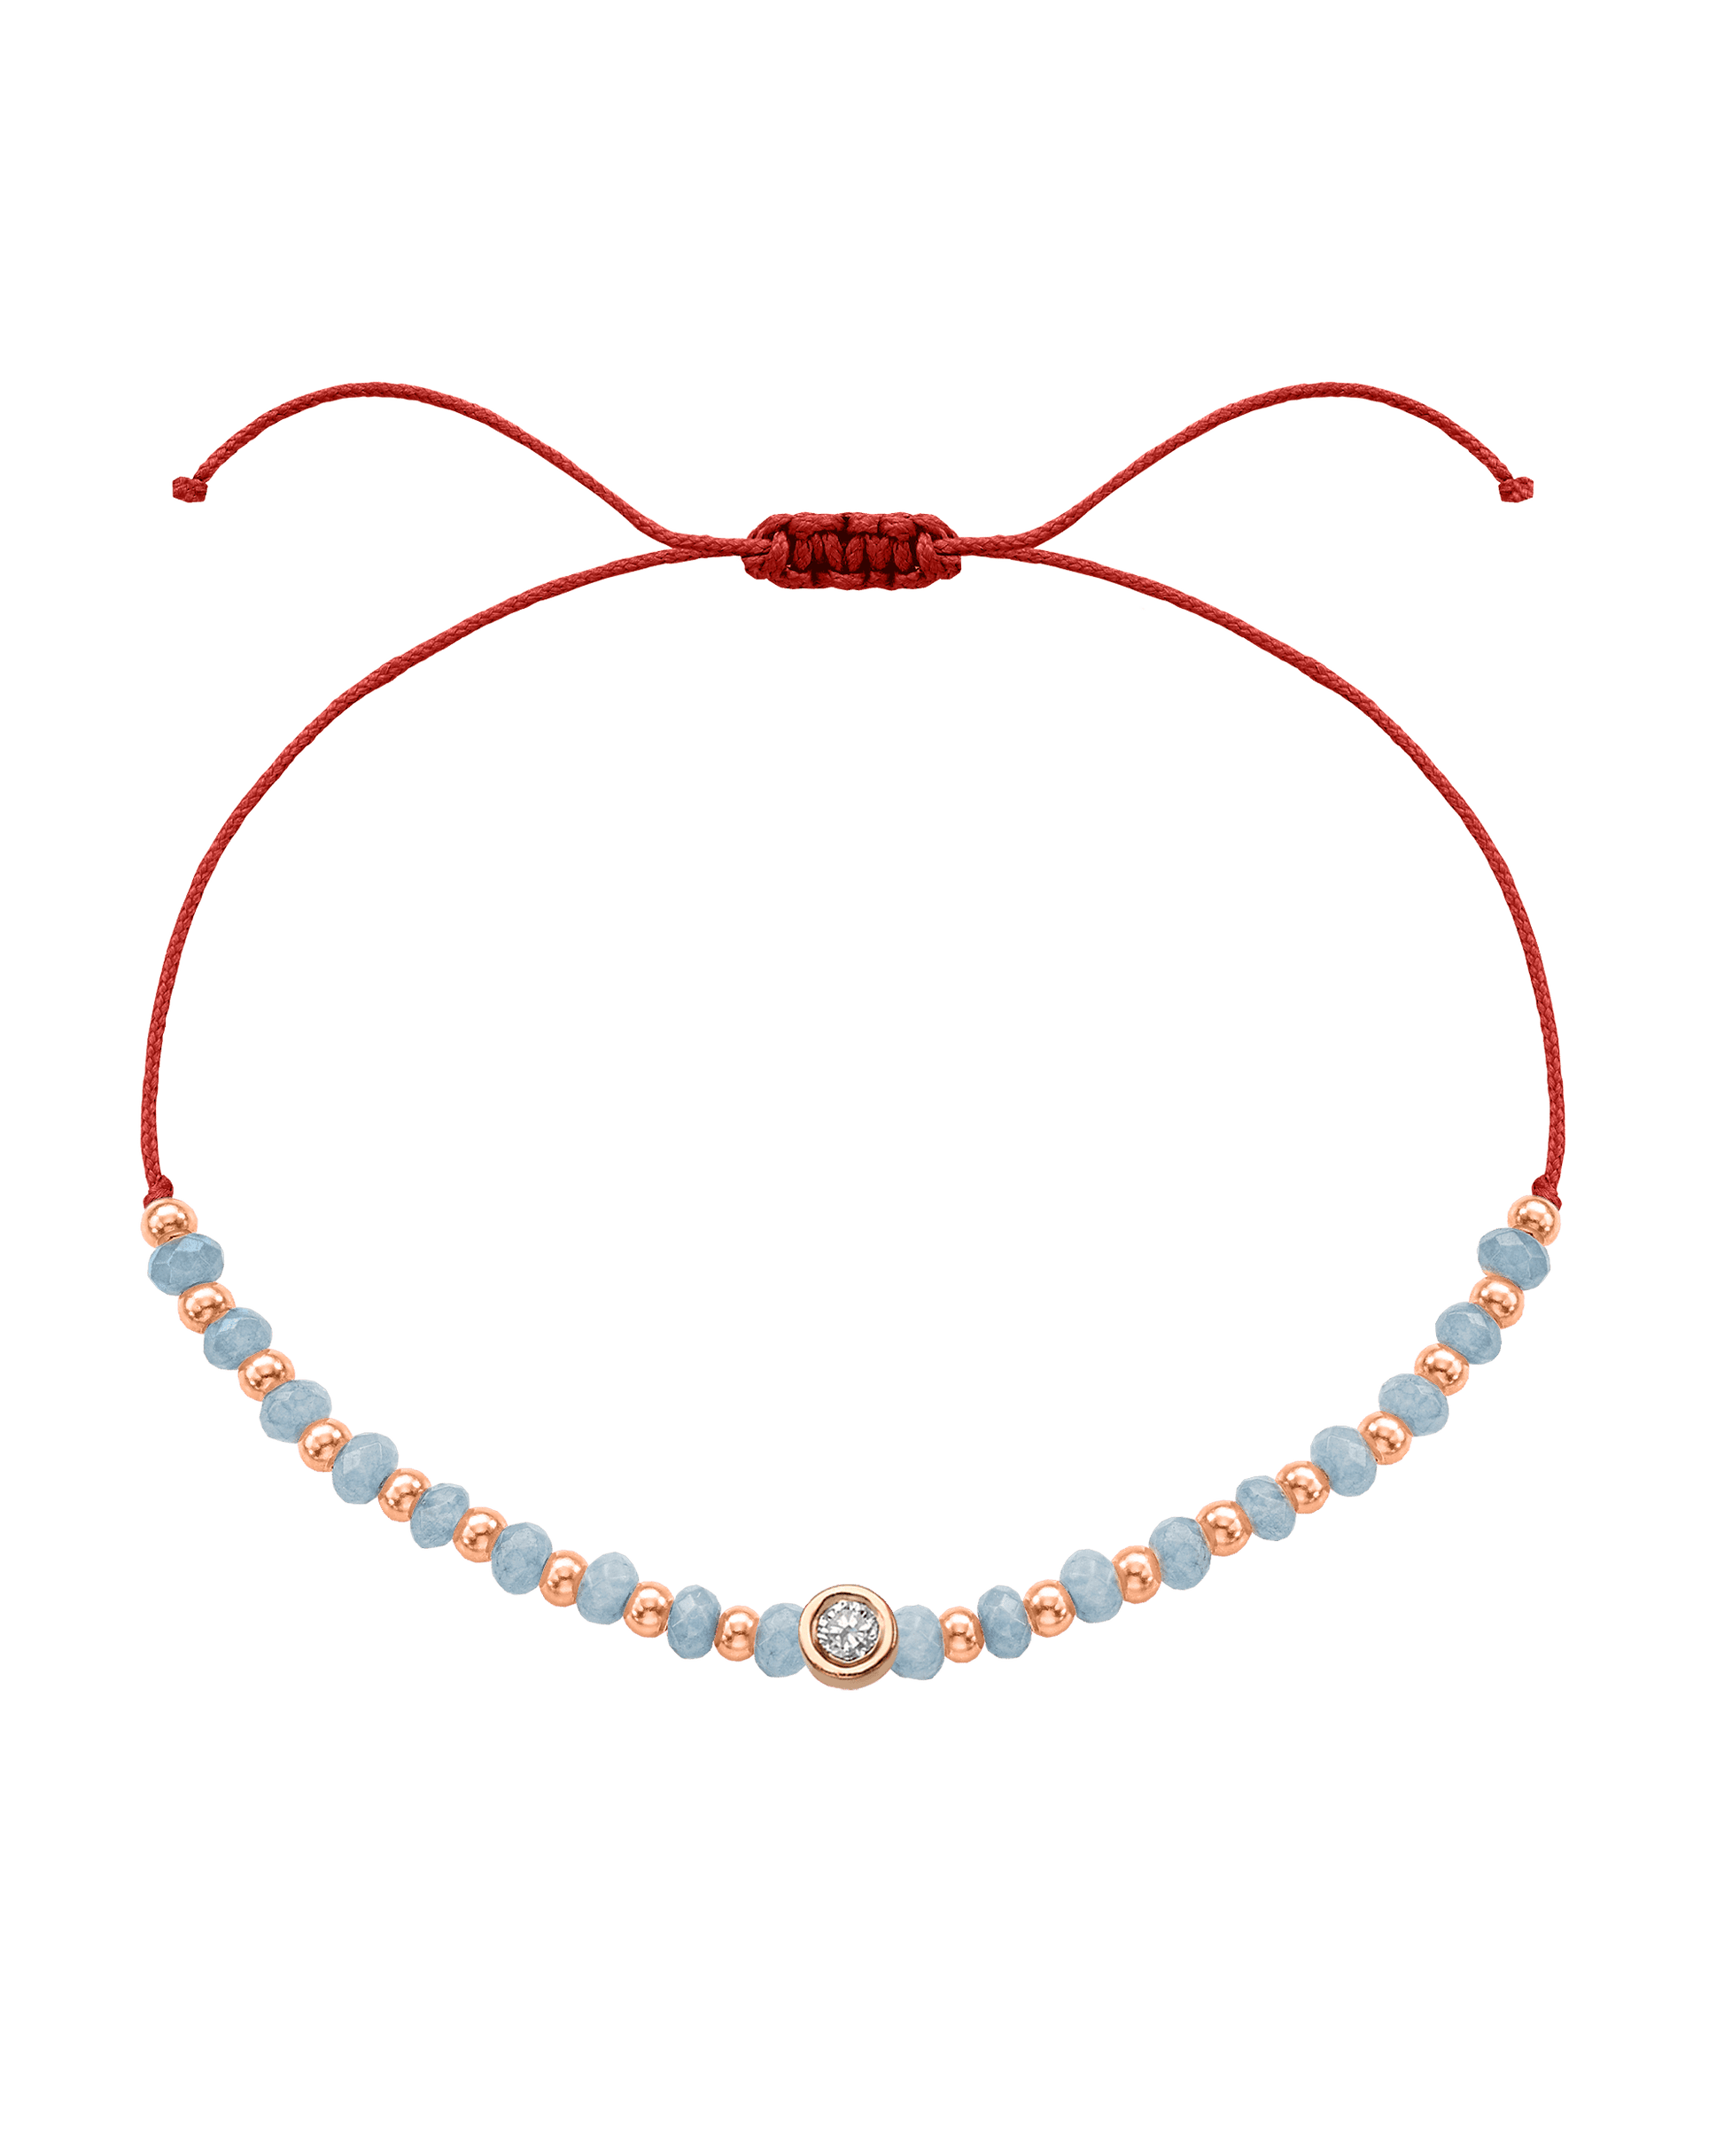 Celestite Gemstone String of Love Bracelet for Mindfulness - 14K Rose Gold Bracelets 14K Solid Gold Red Medium: 0.04ct 